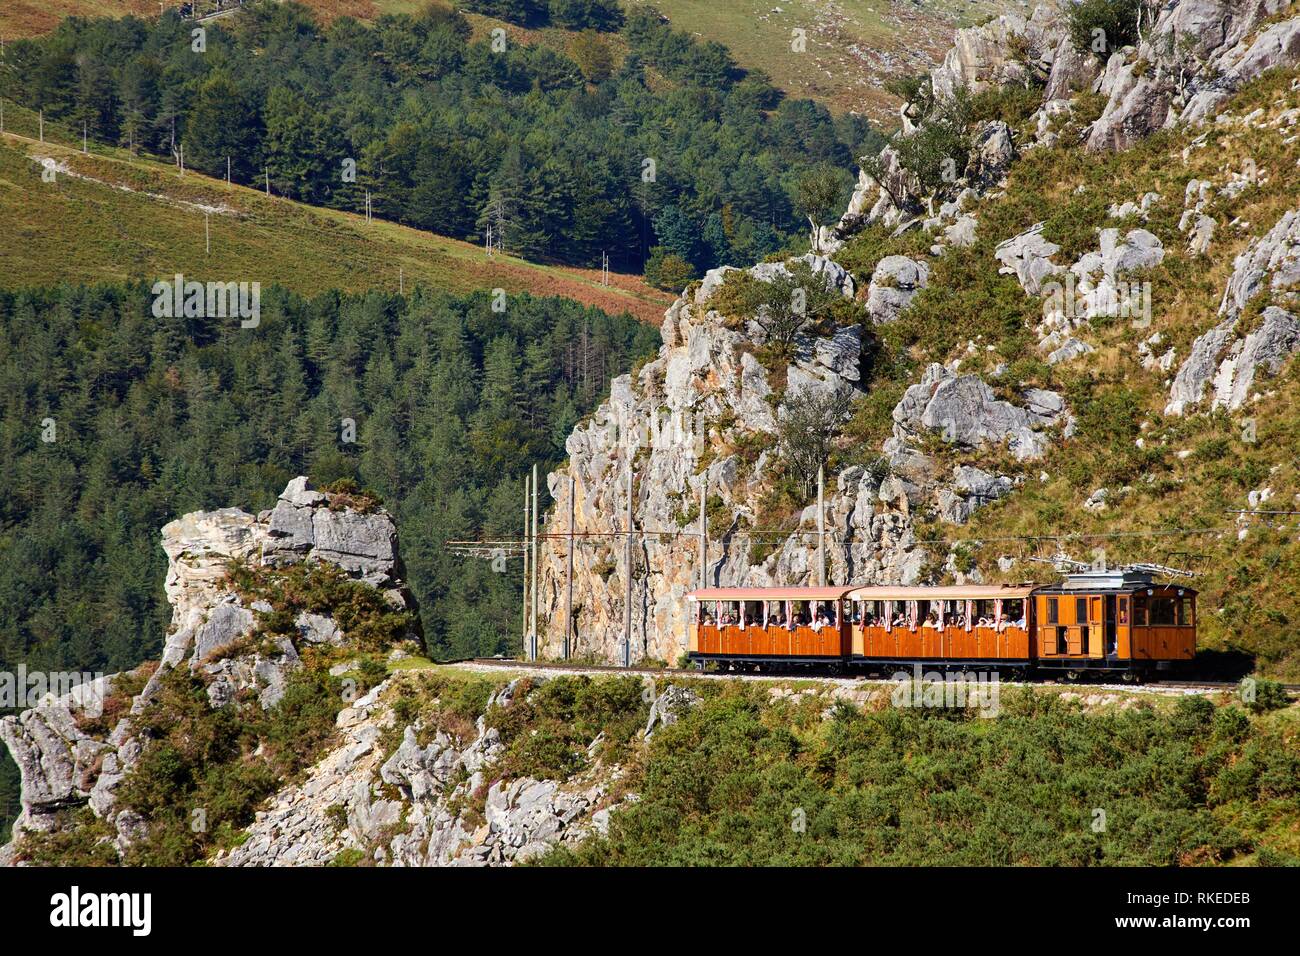 Tren de Larrune, Le Train de La Rhune, Sare, Aquitaine, Pyrenees Atlantiques, France, Europe Stock Photo